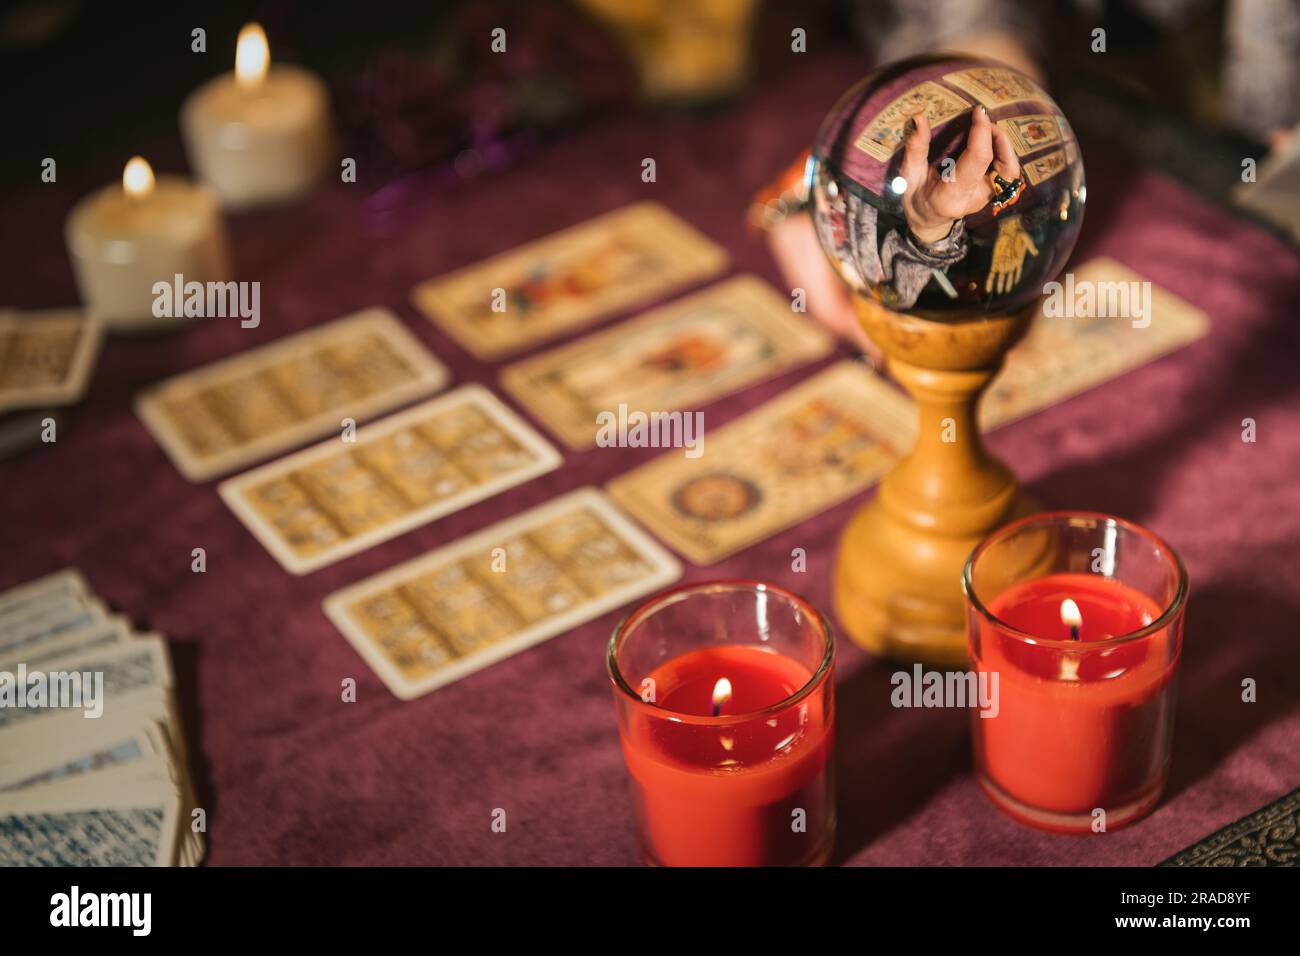 Mise au point sélective de boule de cristal reflétant la récolte apaisante prédire l'avenir avec des cartes de tarot près de bougies allumées sur la table contre un arrière-plan flou Banque D'Images